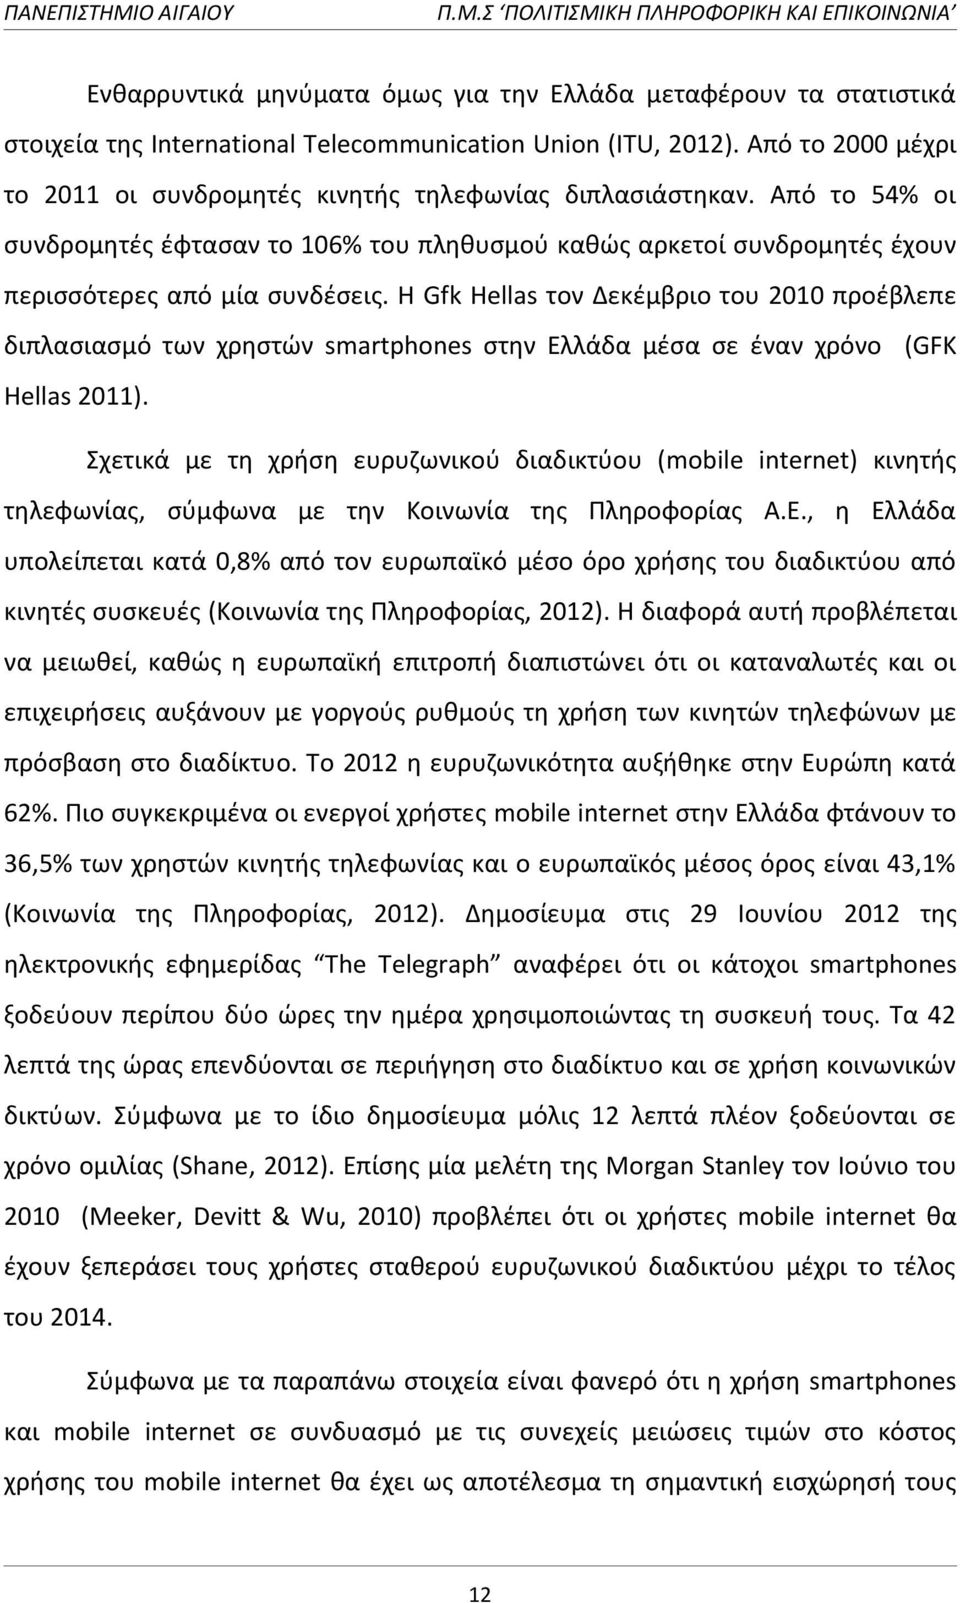 Θ Gfk Hellas τον Δεκζμβριο του 2010 προζβλεπε διπλαςιαςμό των χρθςτϊν smartphones ςτθν Ελλάδα μζςα ςε ζναν χρόνο (GFK Hellas 2011).